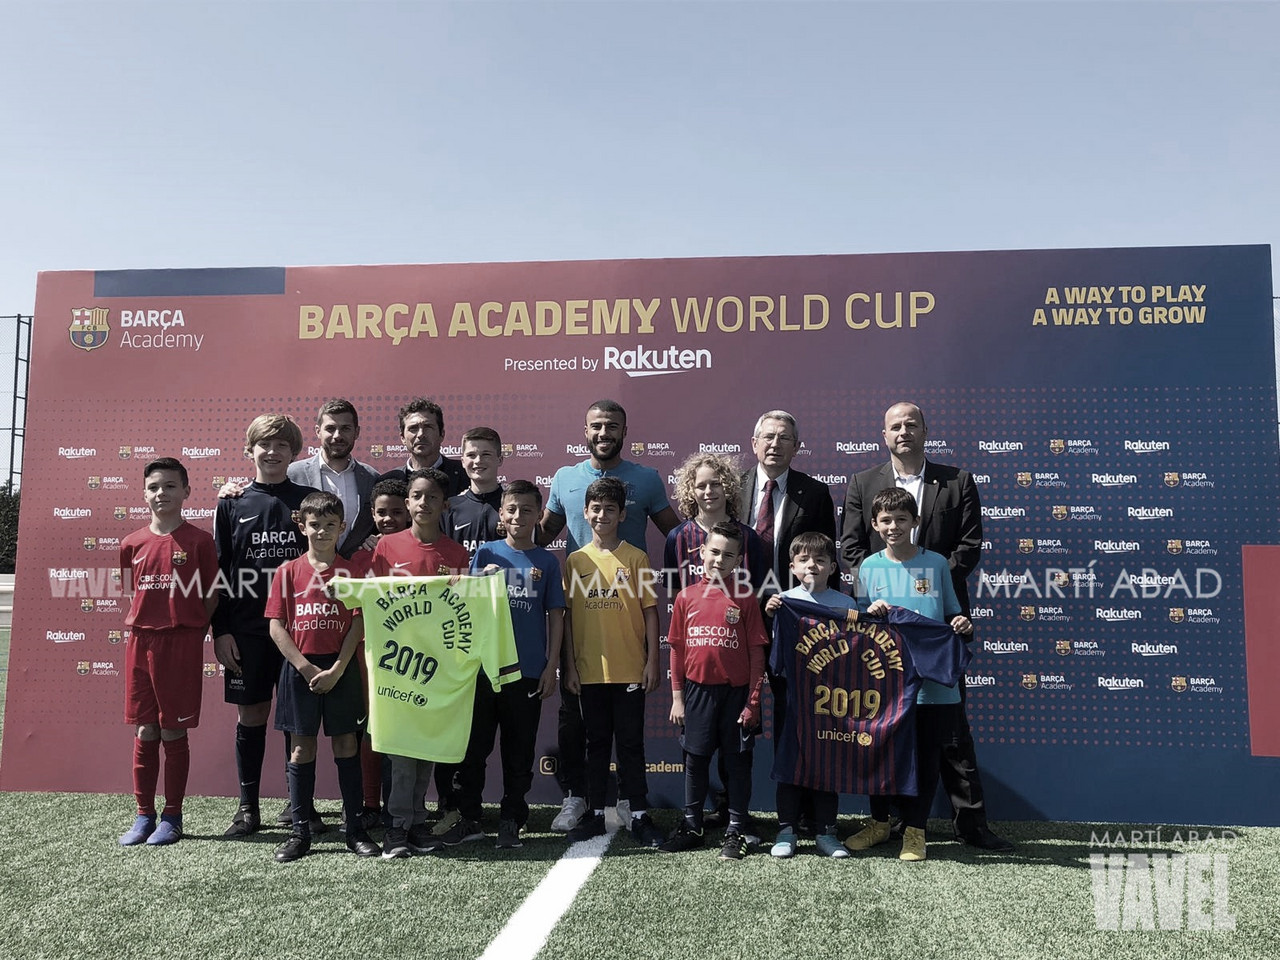 El Barça presenta la octava edición de la Barça Academy World Cup